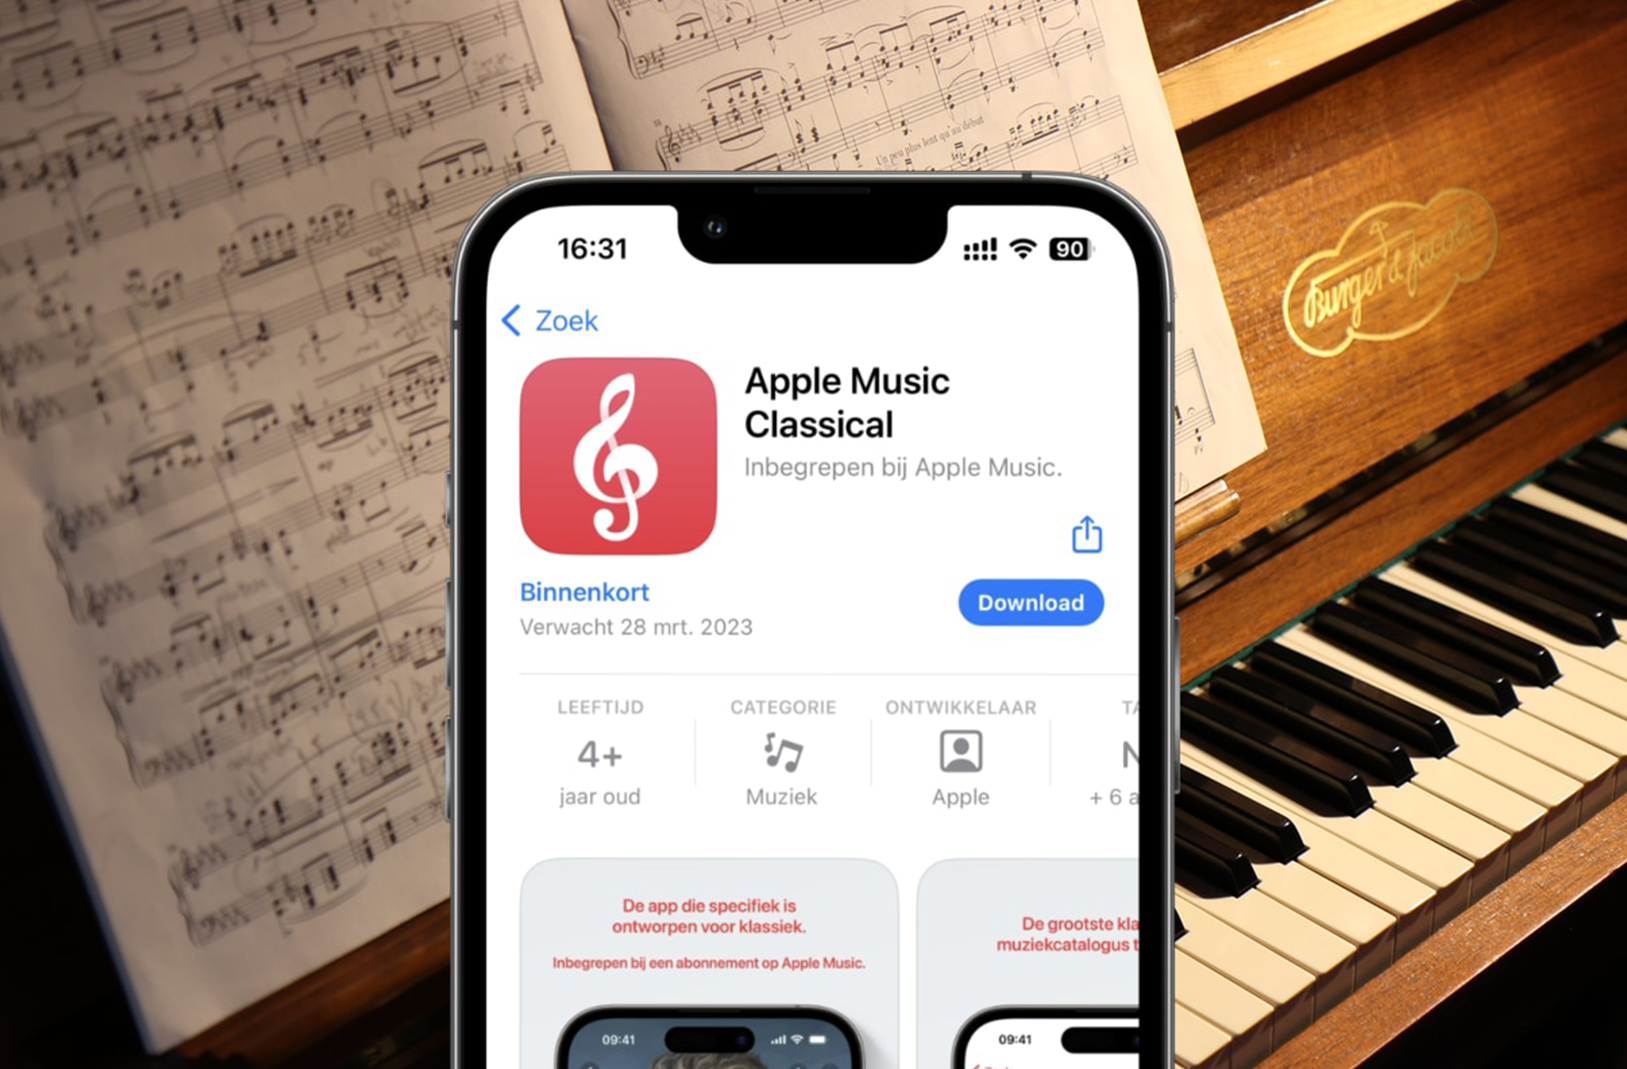 Apple Music Classical – новое приложение Apple. Все, что известно сегодня